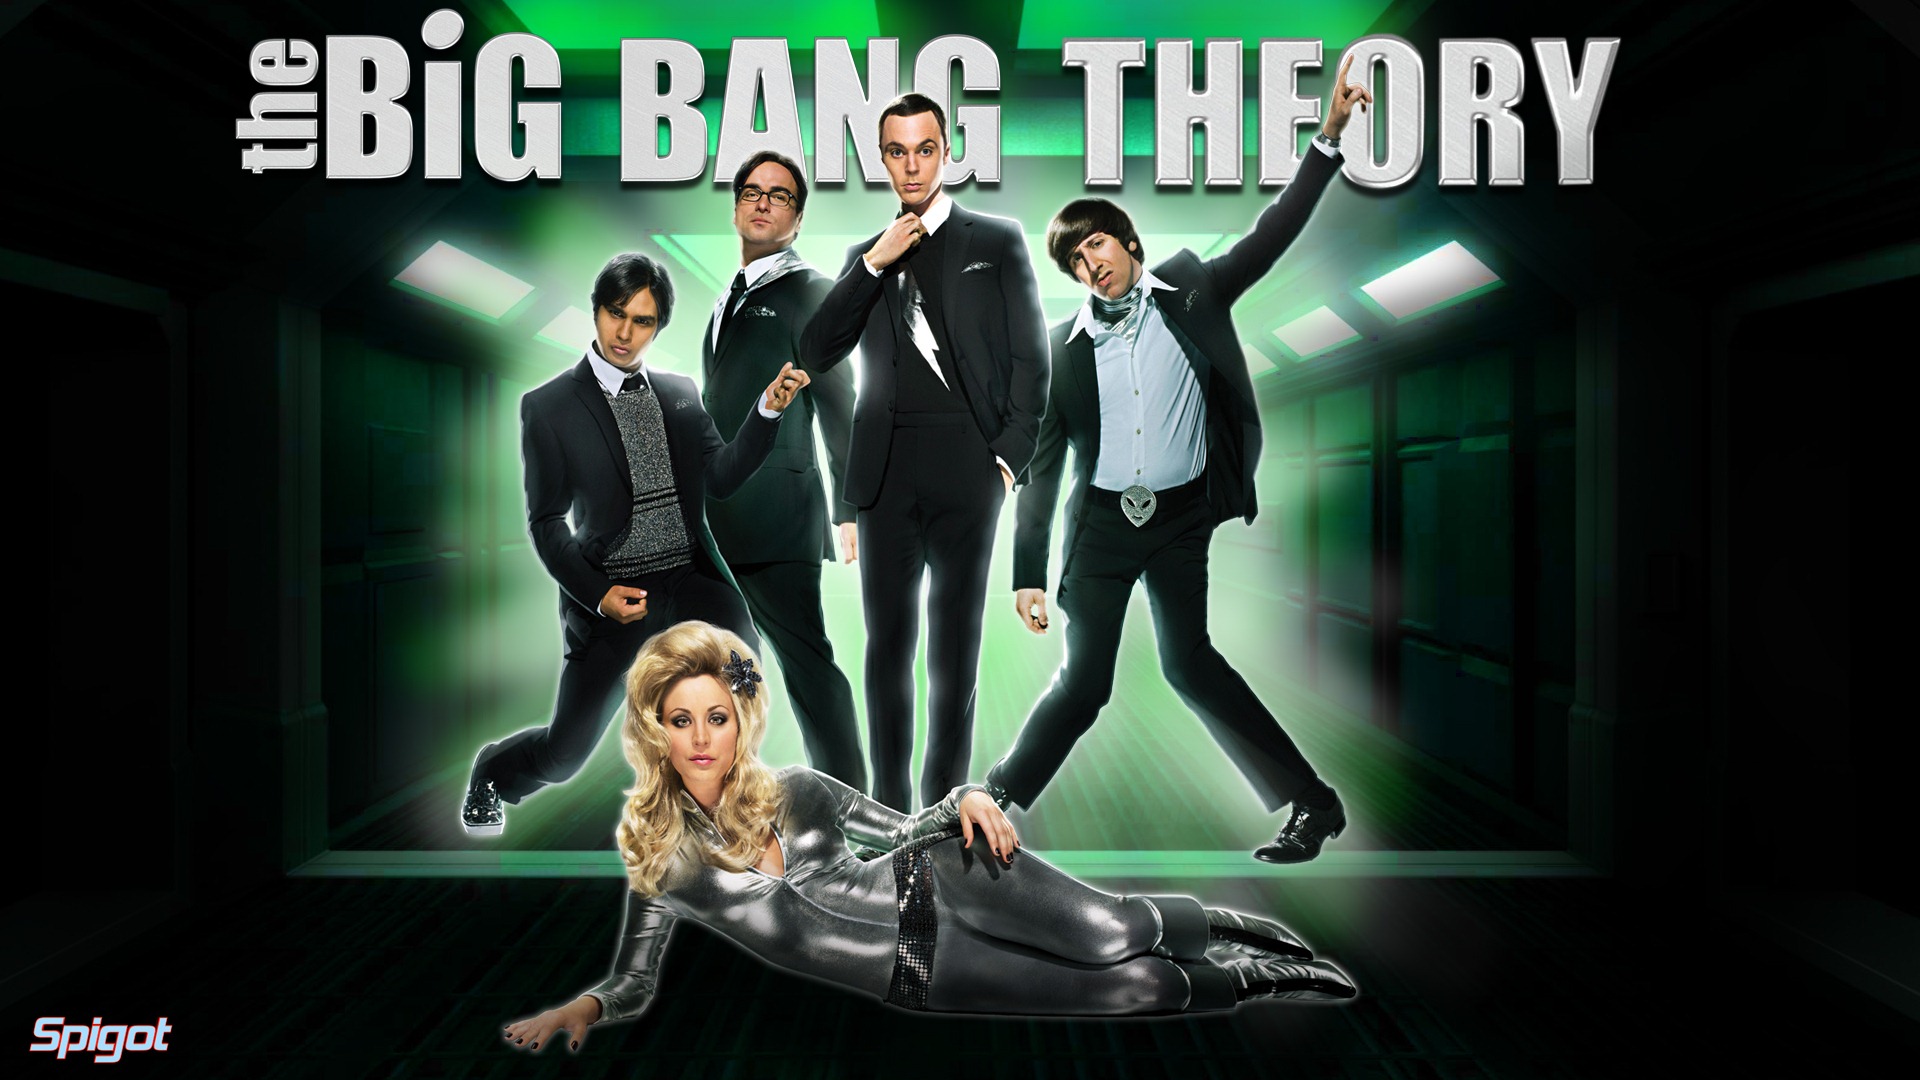 The Big Bang Theory TV Series HD wallpapers #6 - 1920x1080